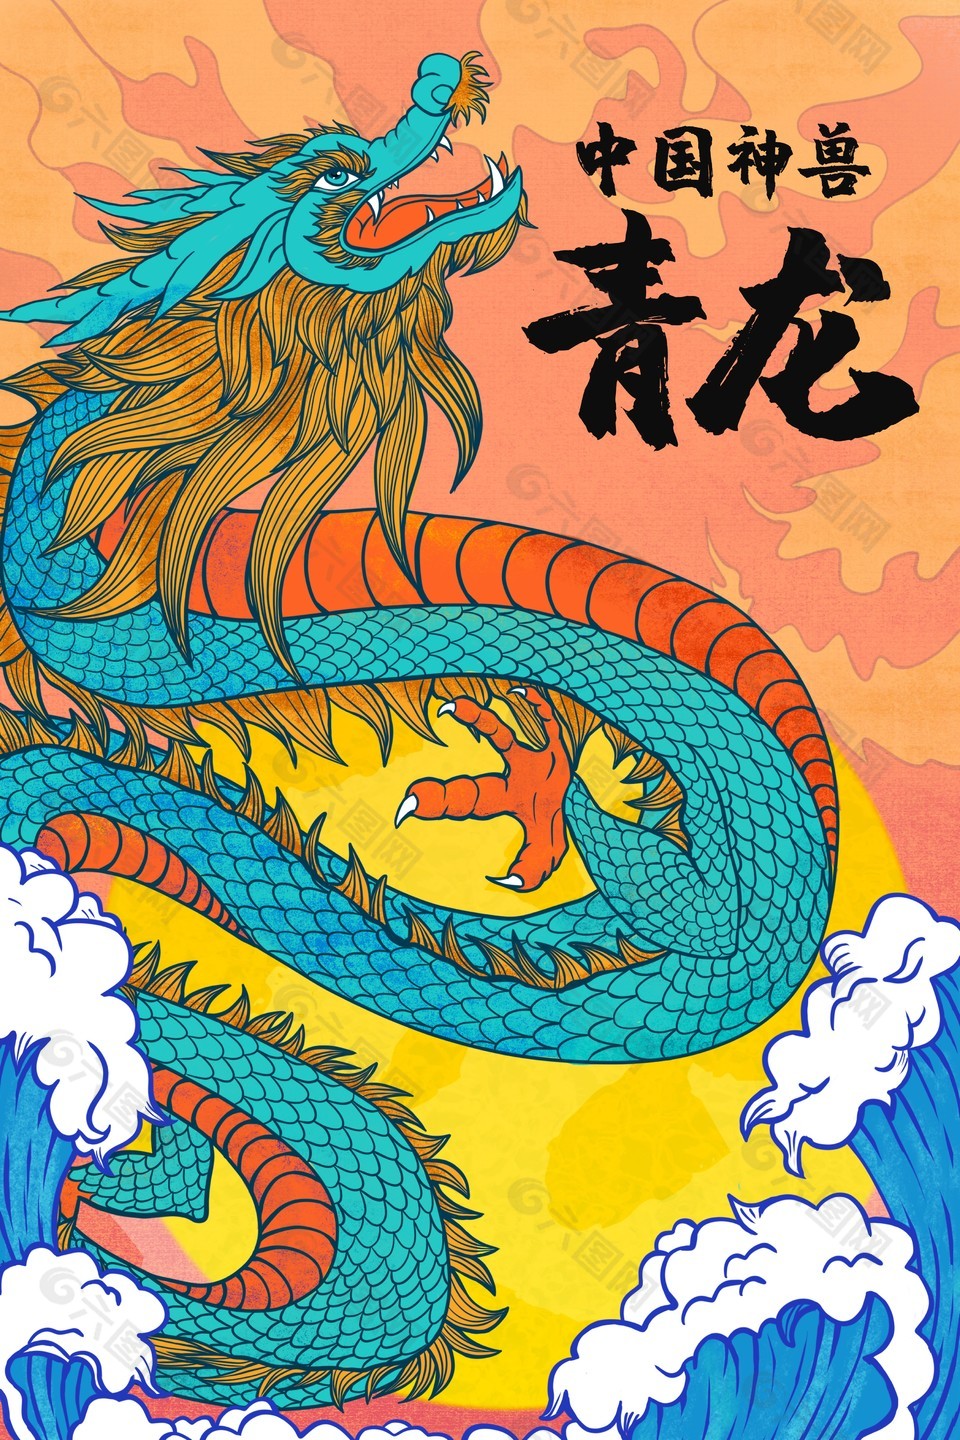 中国神兽青龙主题插画